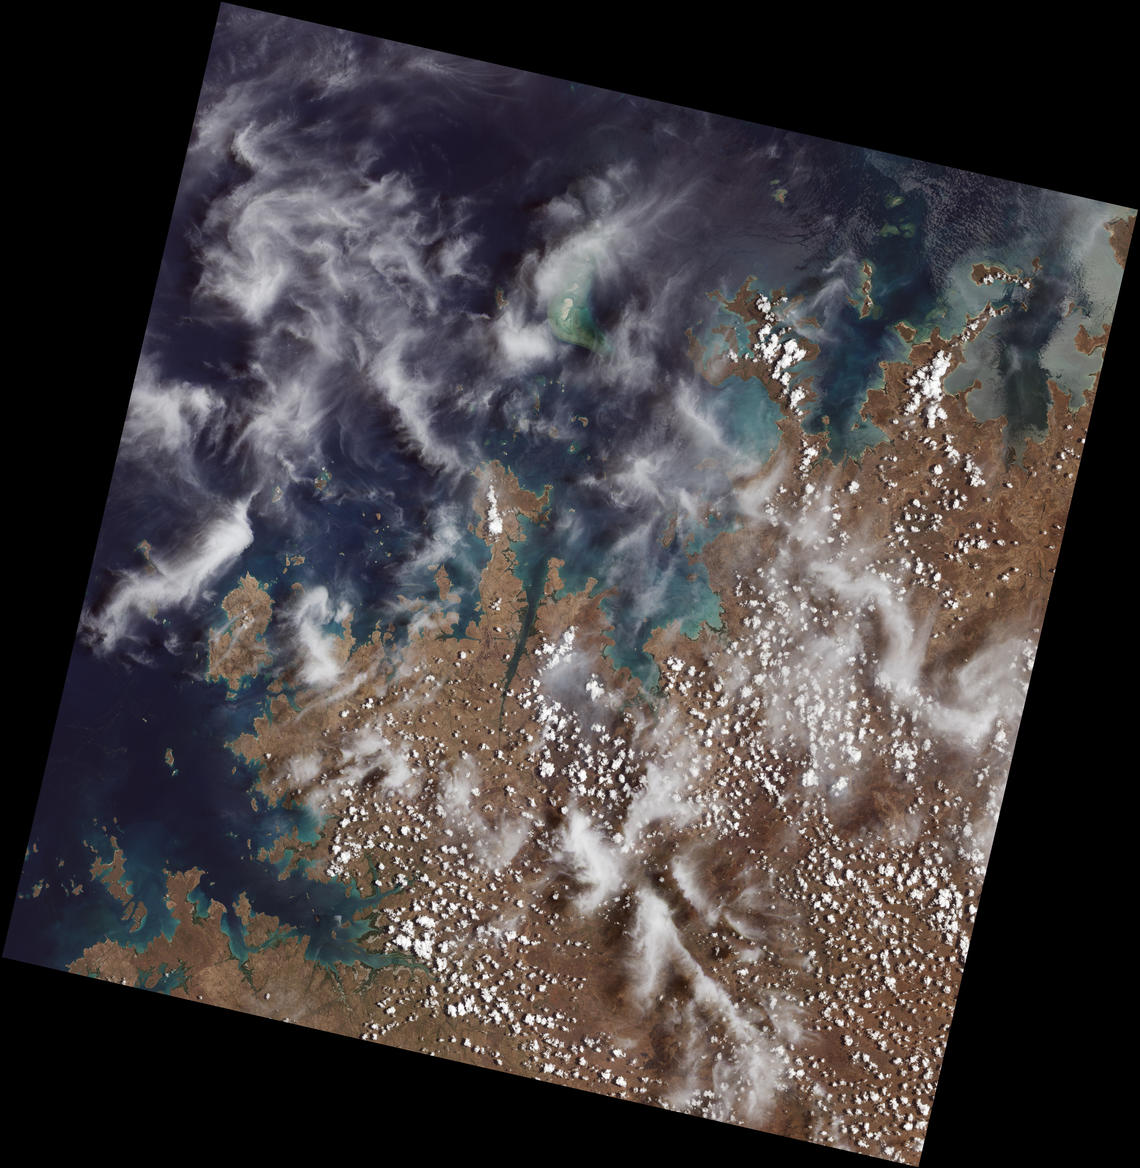 Landsat 9 first light image